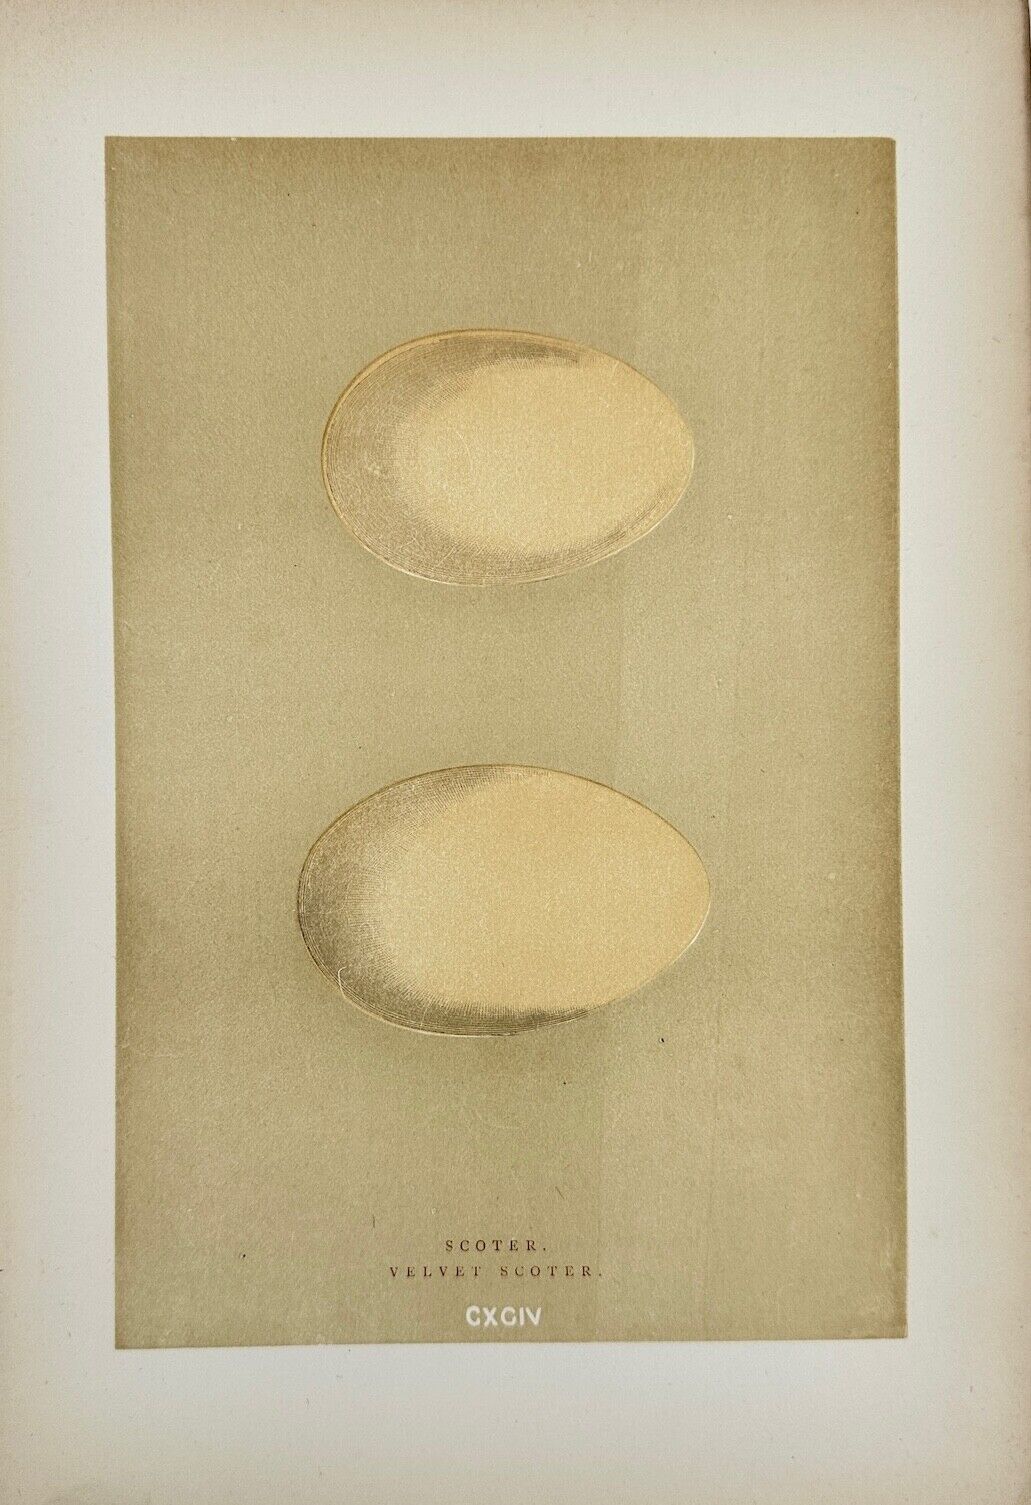 Antique Bird Egg Print - Francis Orpen Morris - Scoter - Velvet Scoter - F2